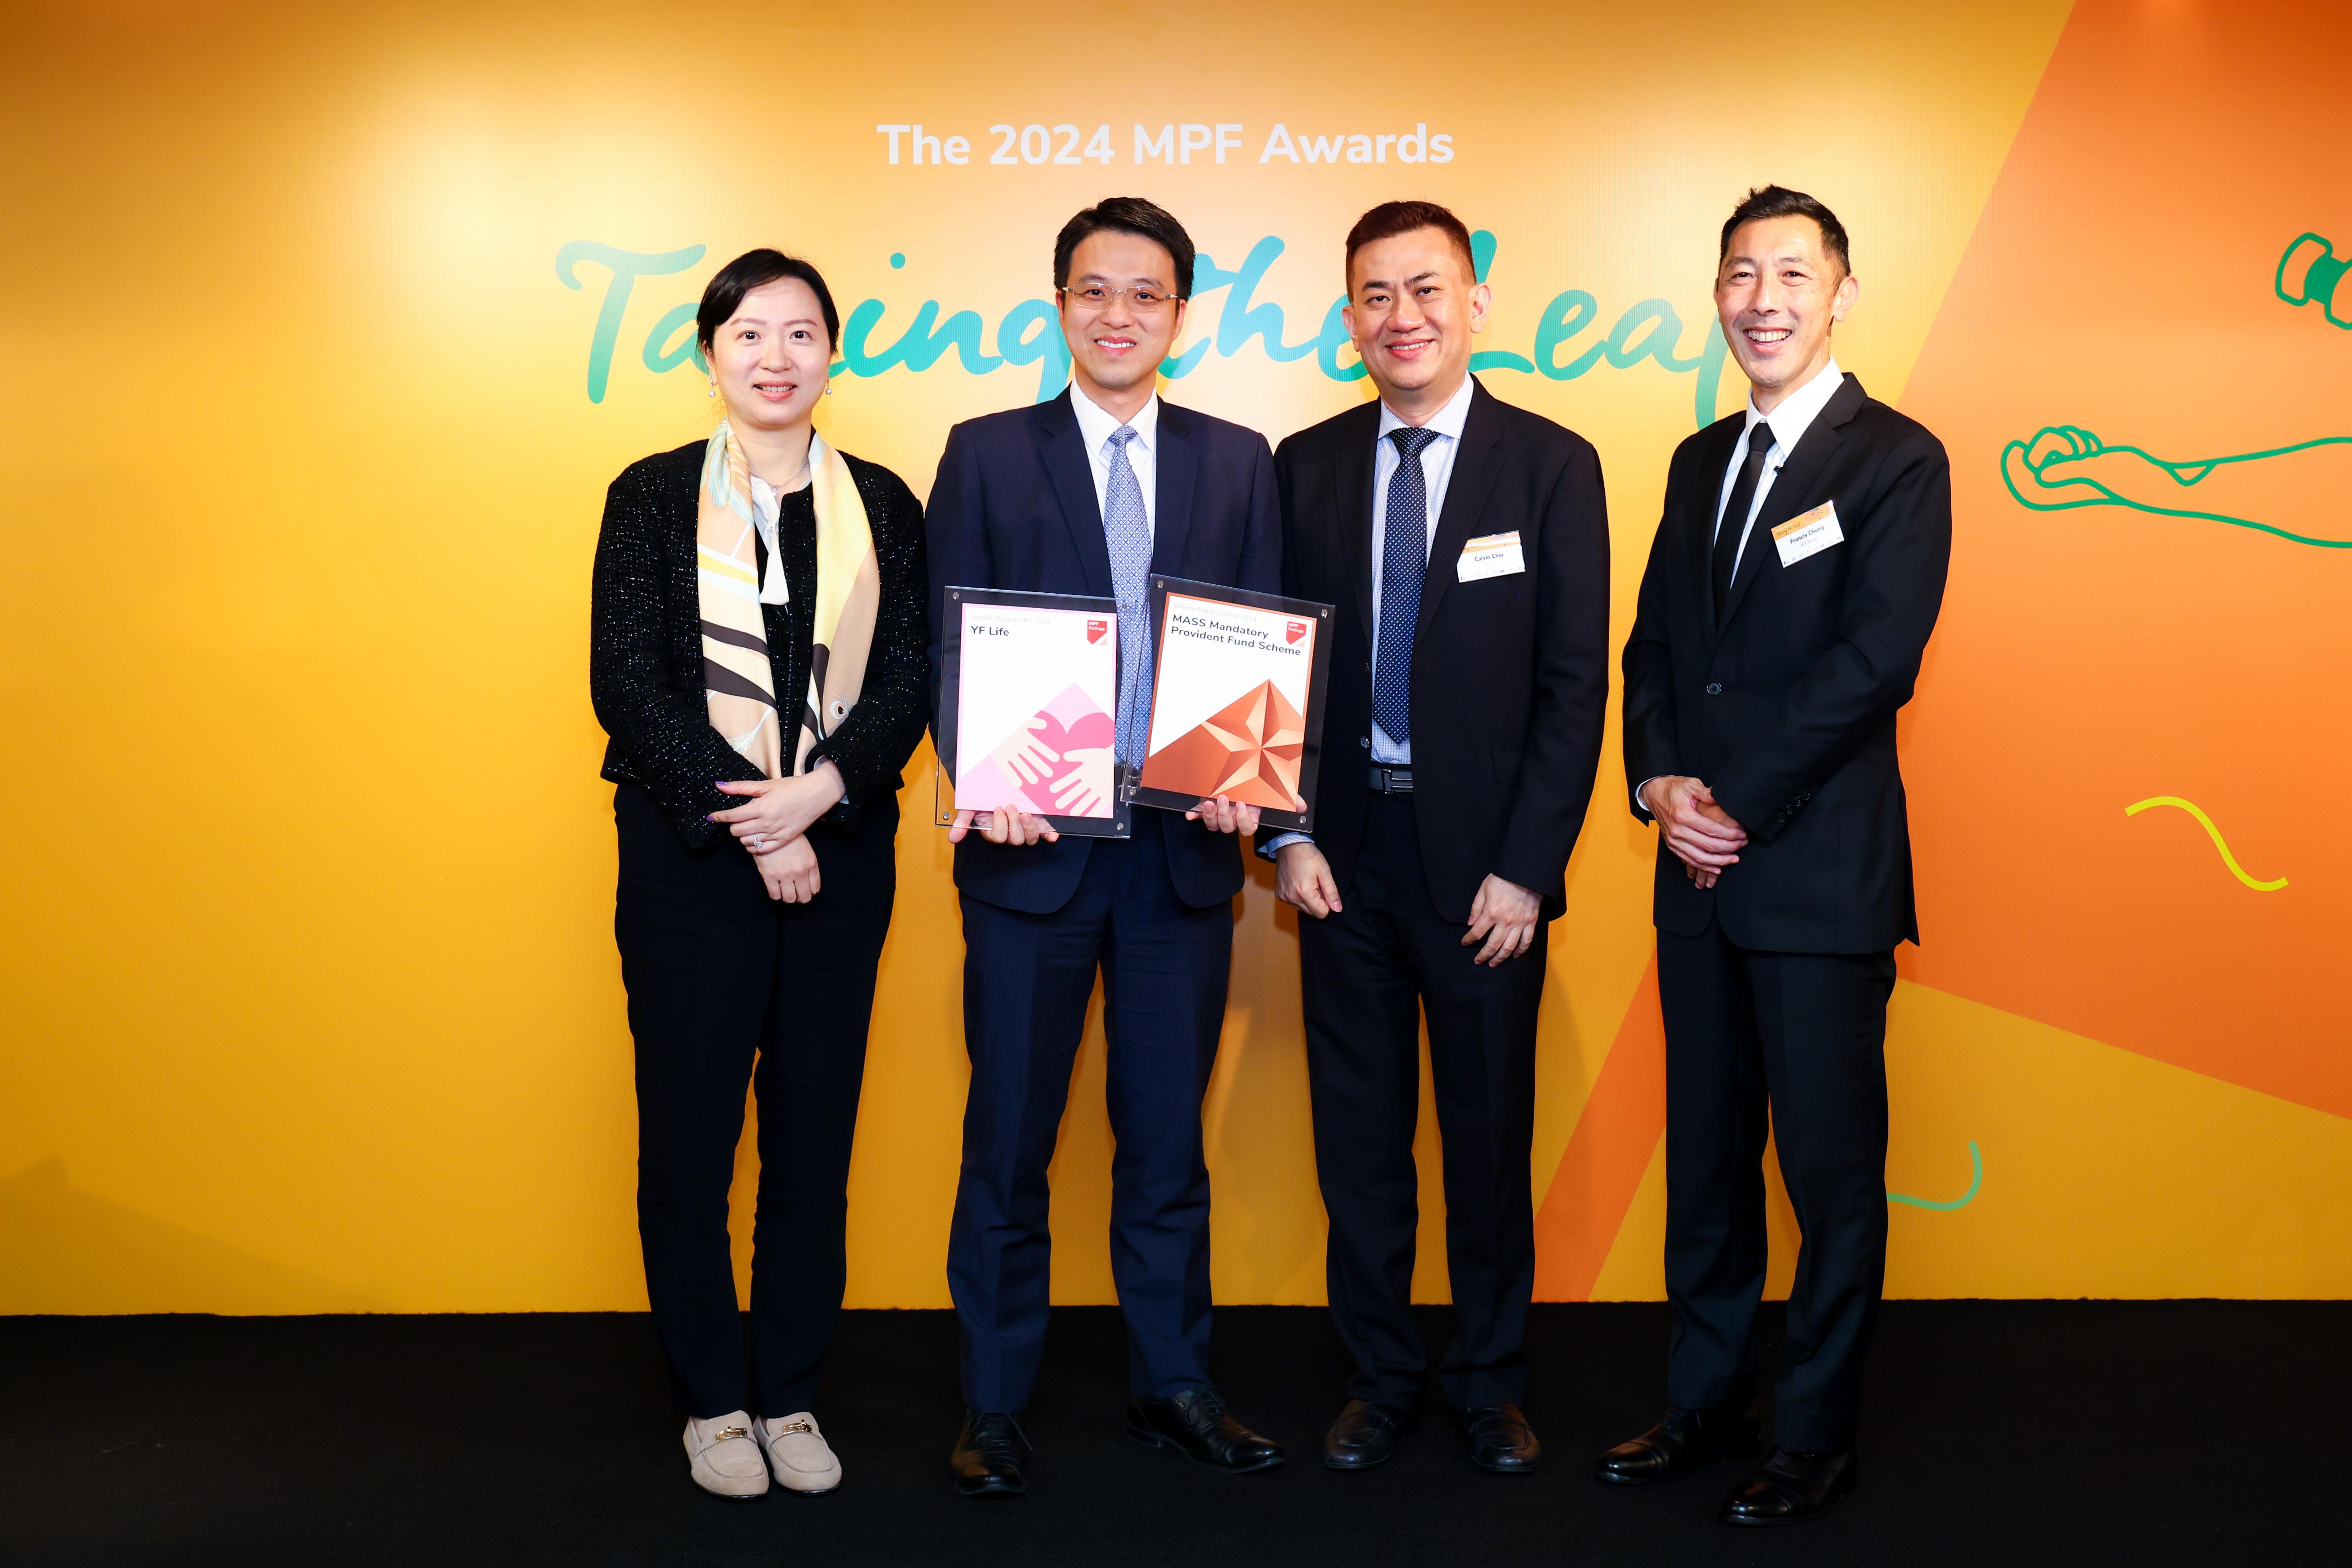 万通信托获得香港独立强积金评级机构《积金评级》颁发两项殊荣。